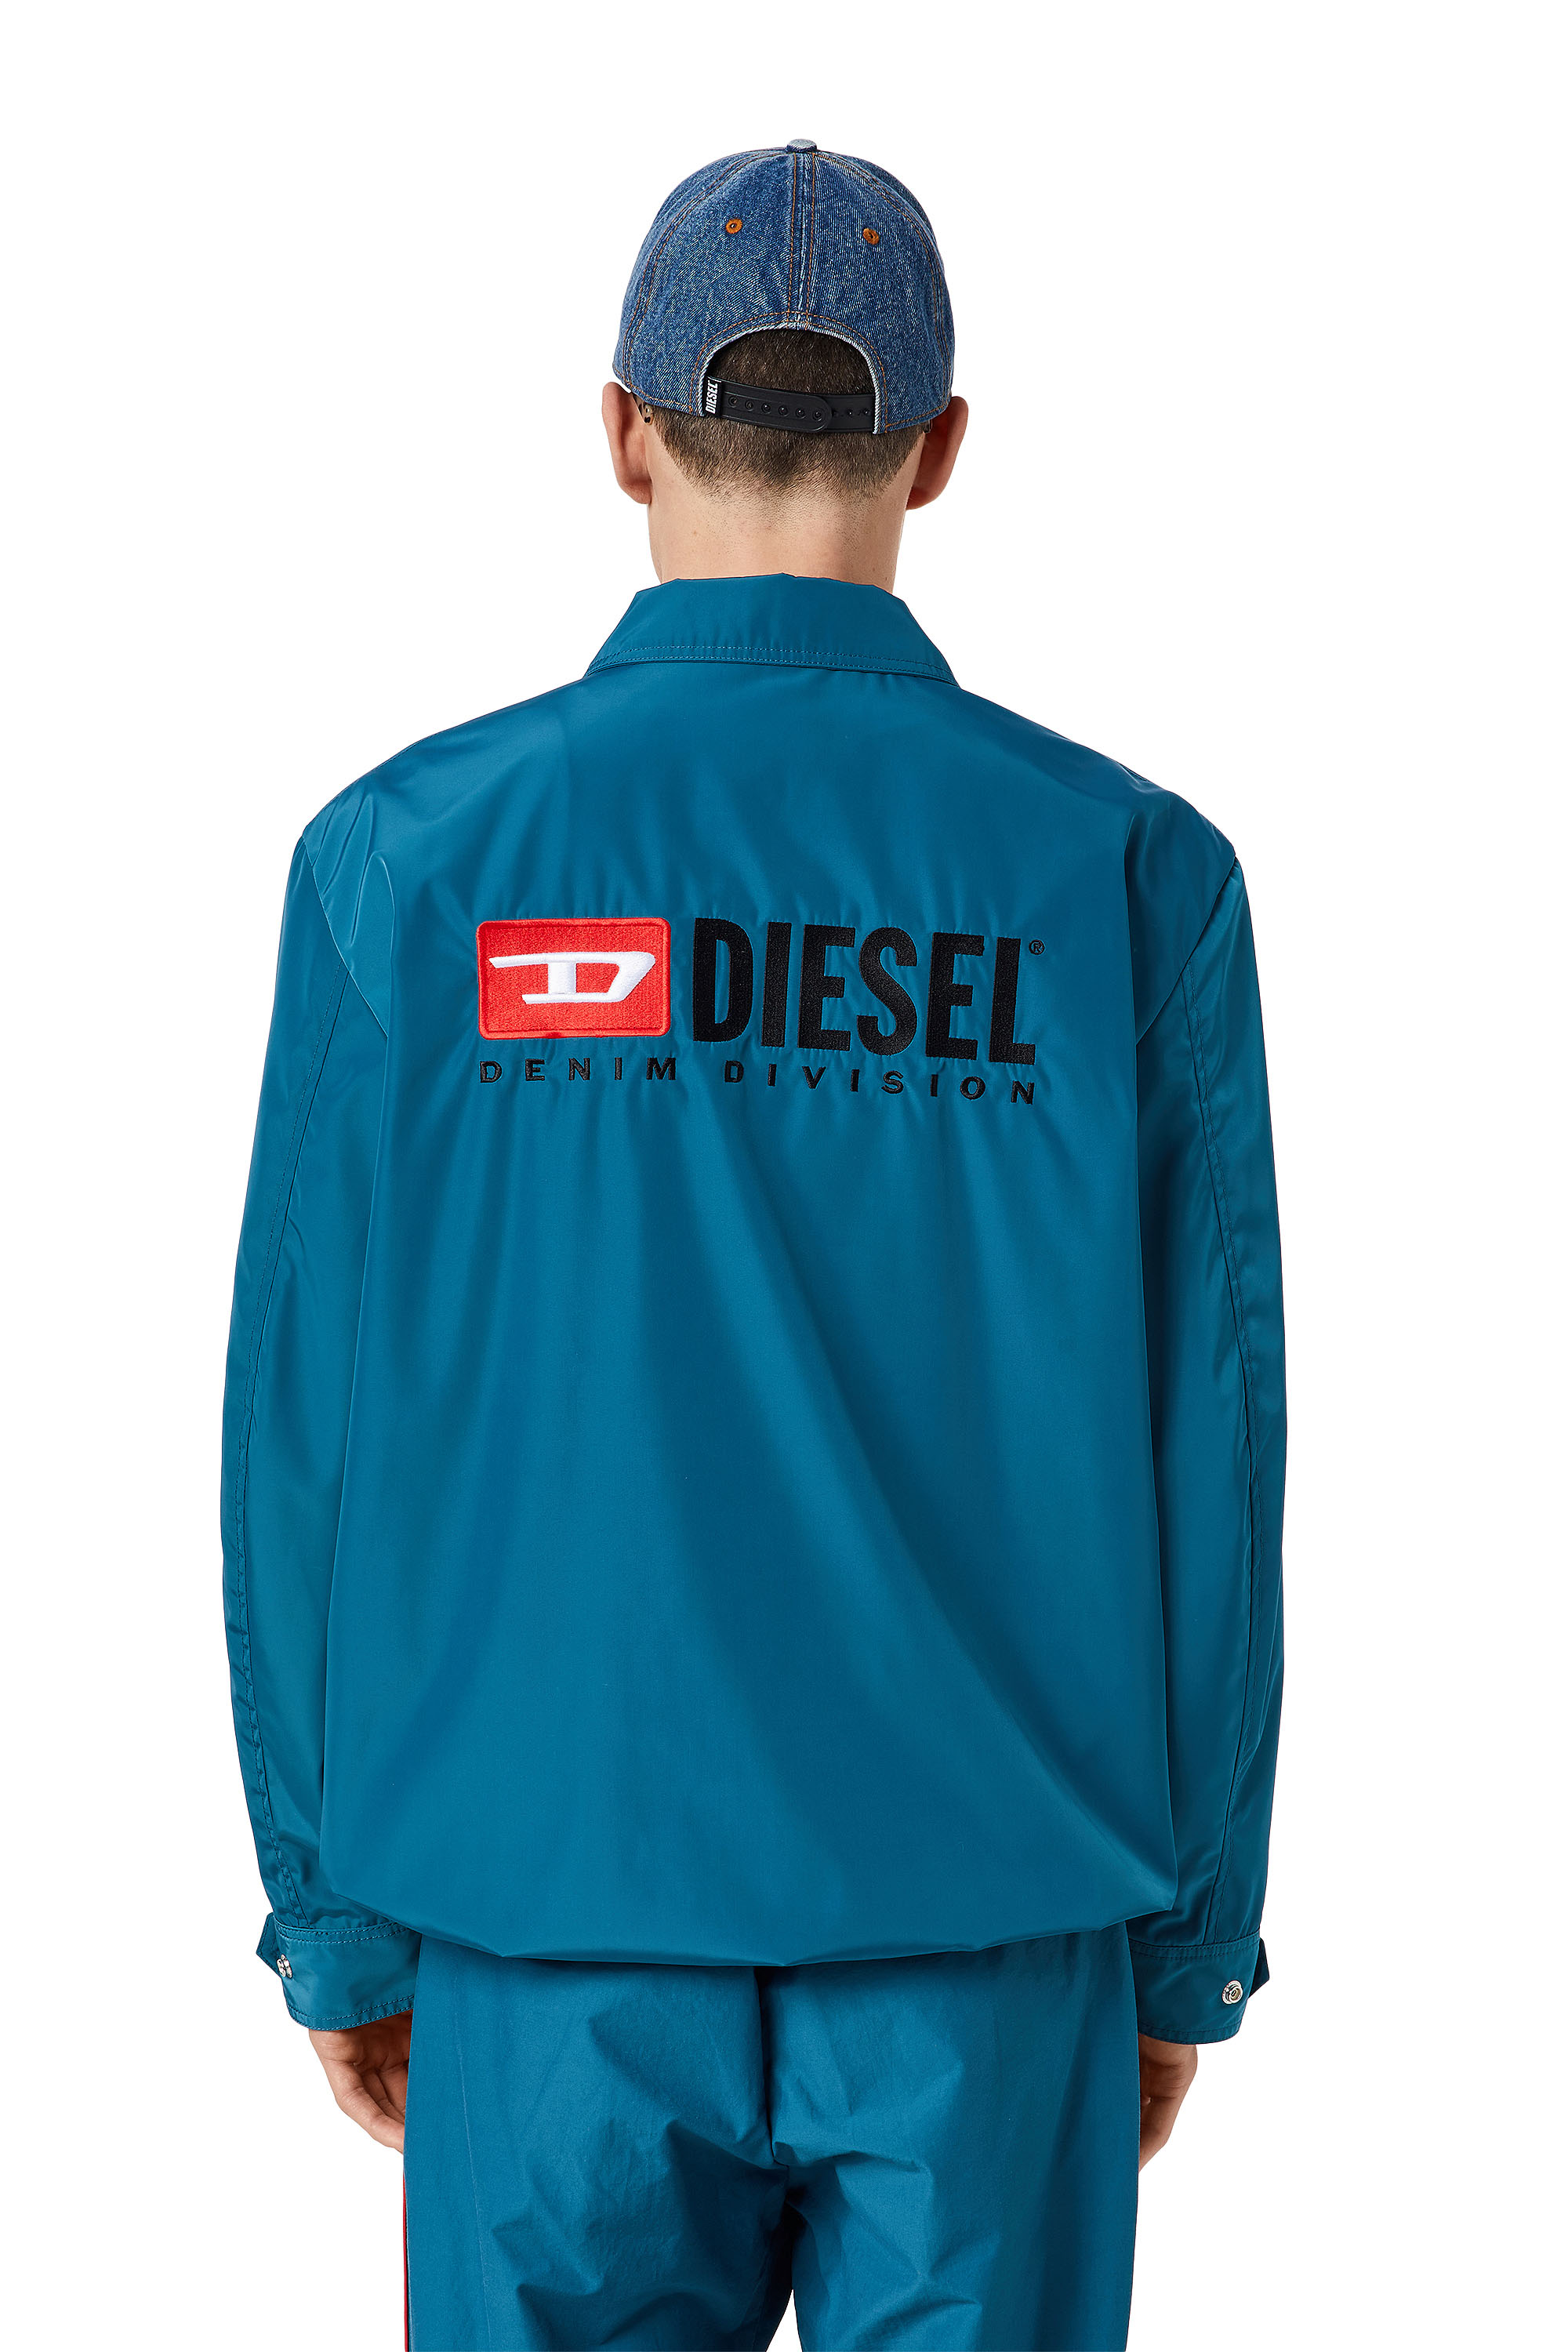 Diesel - J-COAL-NP, Blue - Image 2